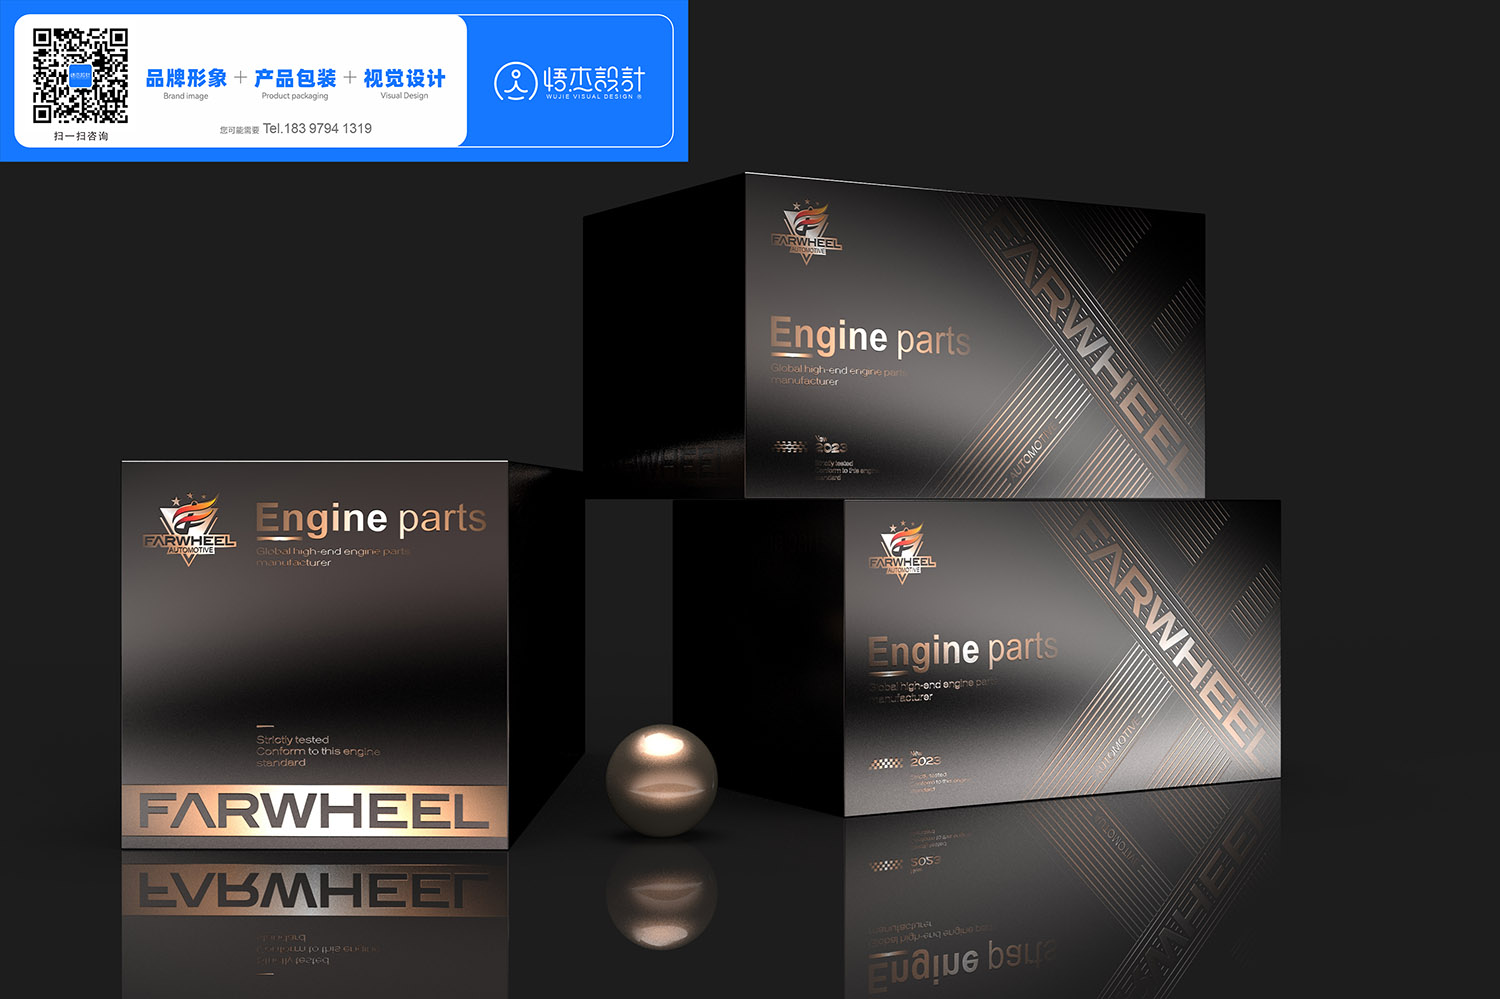 2组发动机引擎汽车零部件通包设计-悟杰品牌视觉设计